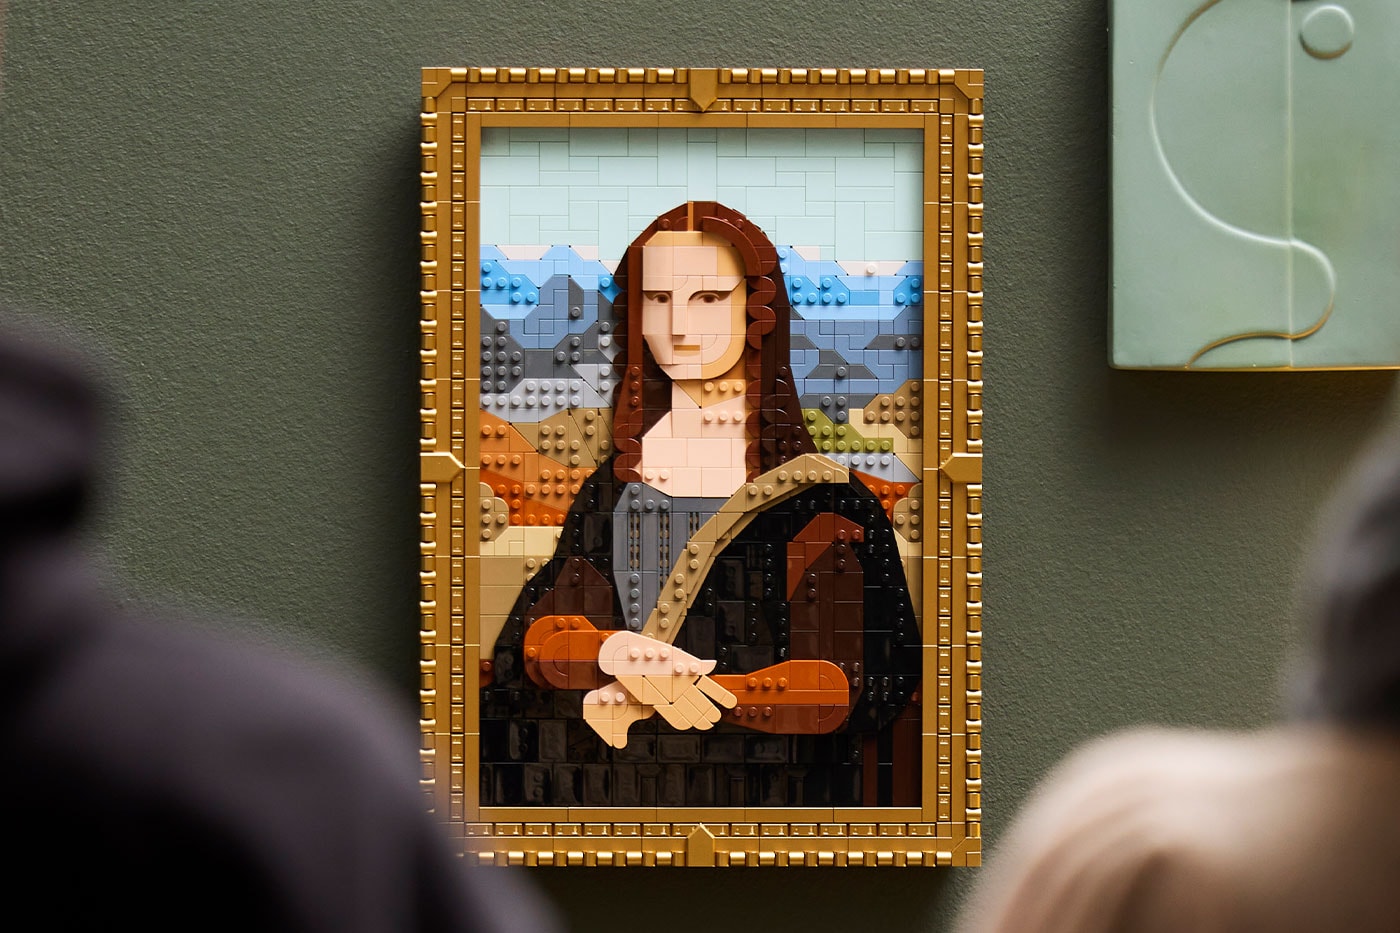 LEGO Paris Mona Lisa Notre-Dame Set 31213 21061 Release Info